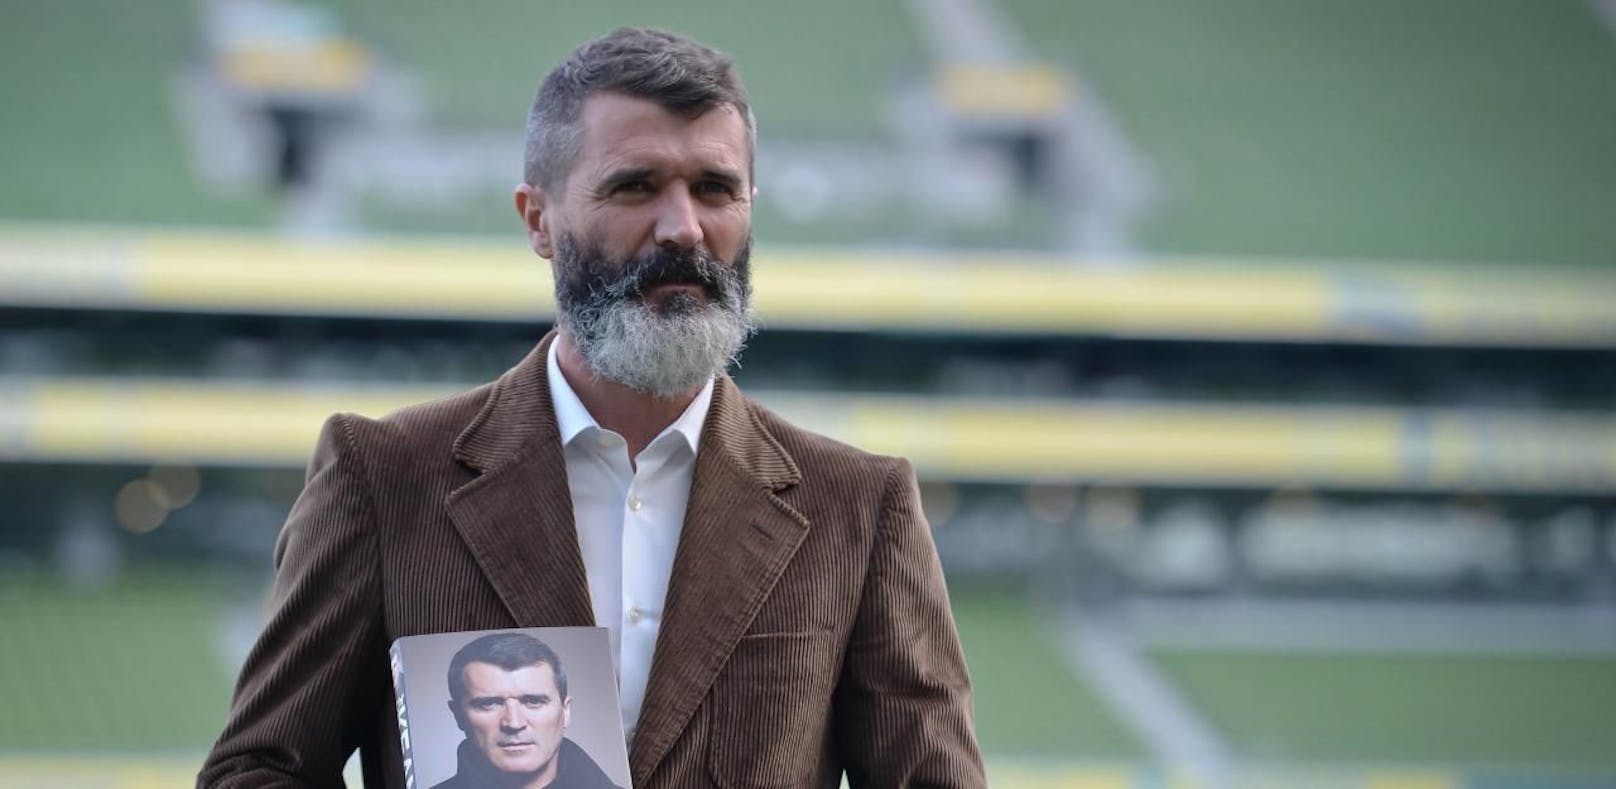 Skandal um Irland-Trainer: "Wir ziehen in den Krieg!"